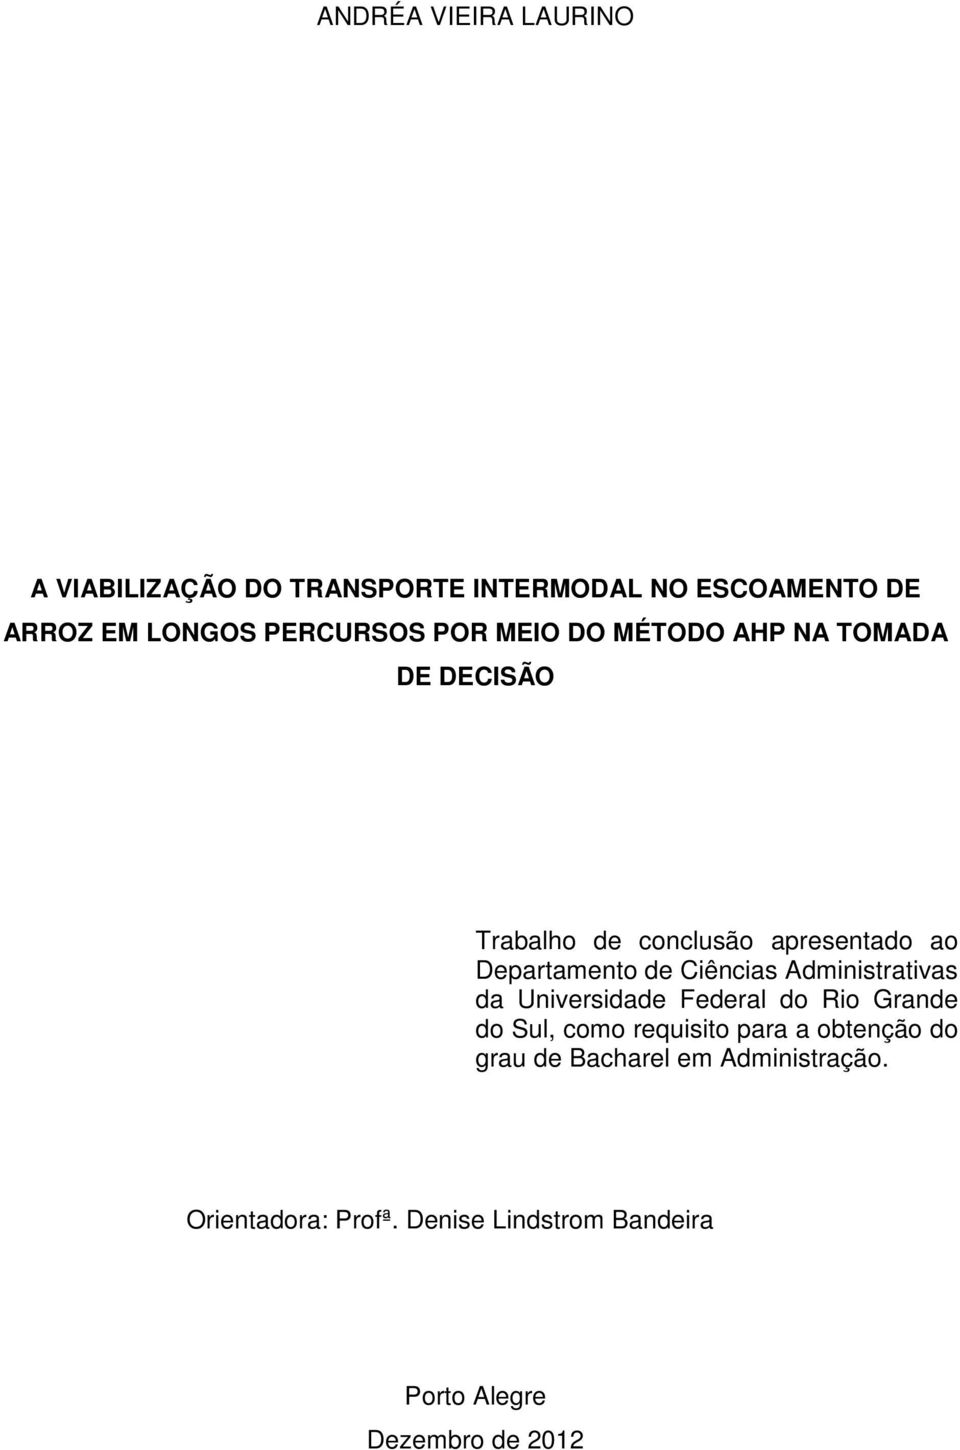 Ciências Administrativas da Universidade Federal do Rio Grande do Sul, como requisito para a obtenção do